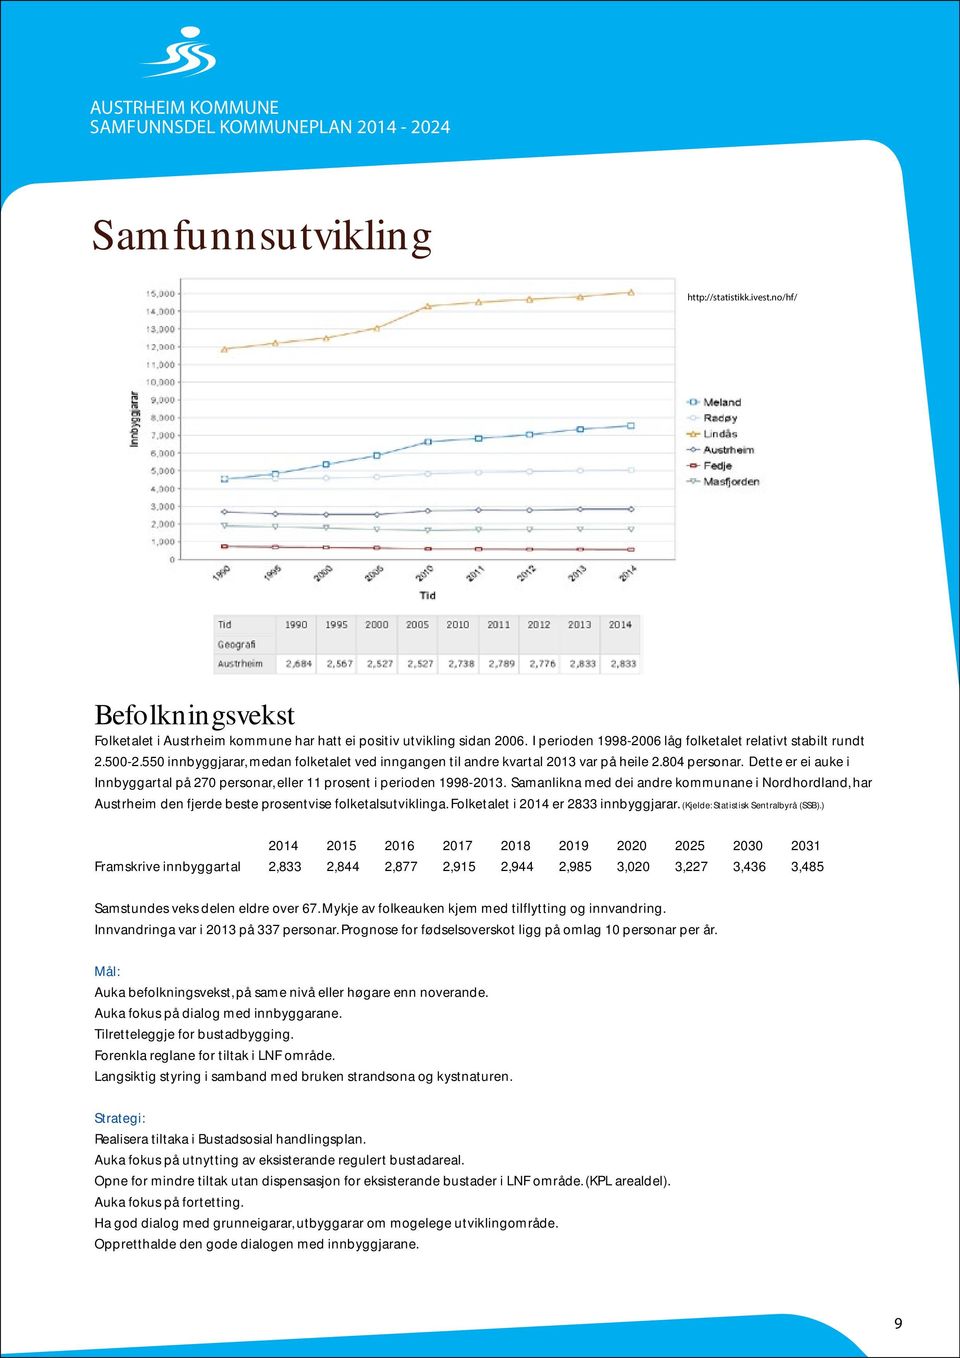 Dette er ei auke i Innbyggartal på 270 personar, eller 11 prosent i perioden 1998-2013.